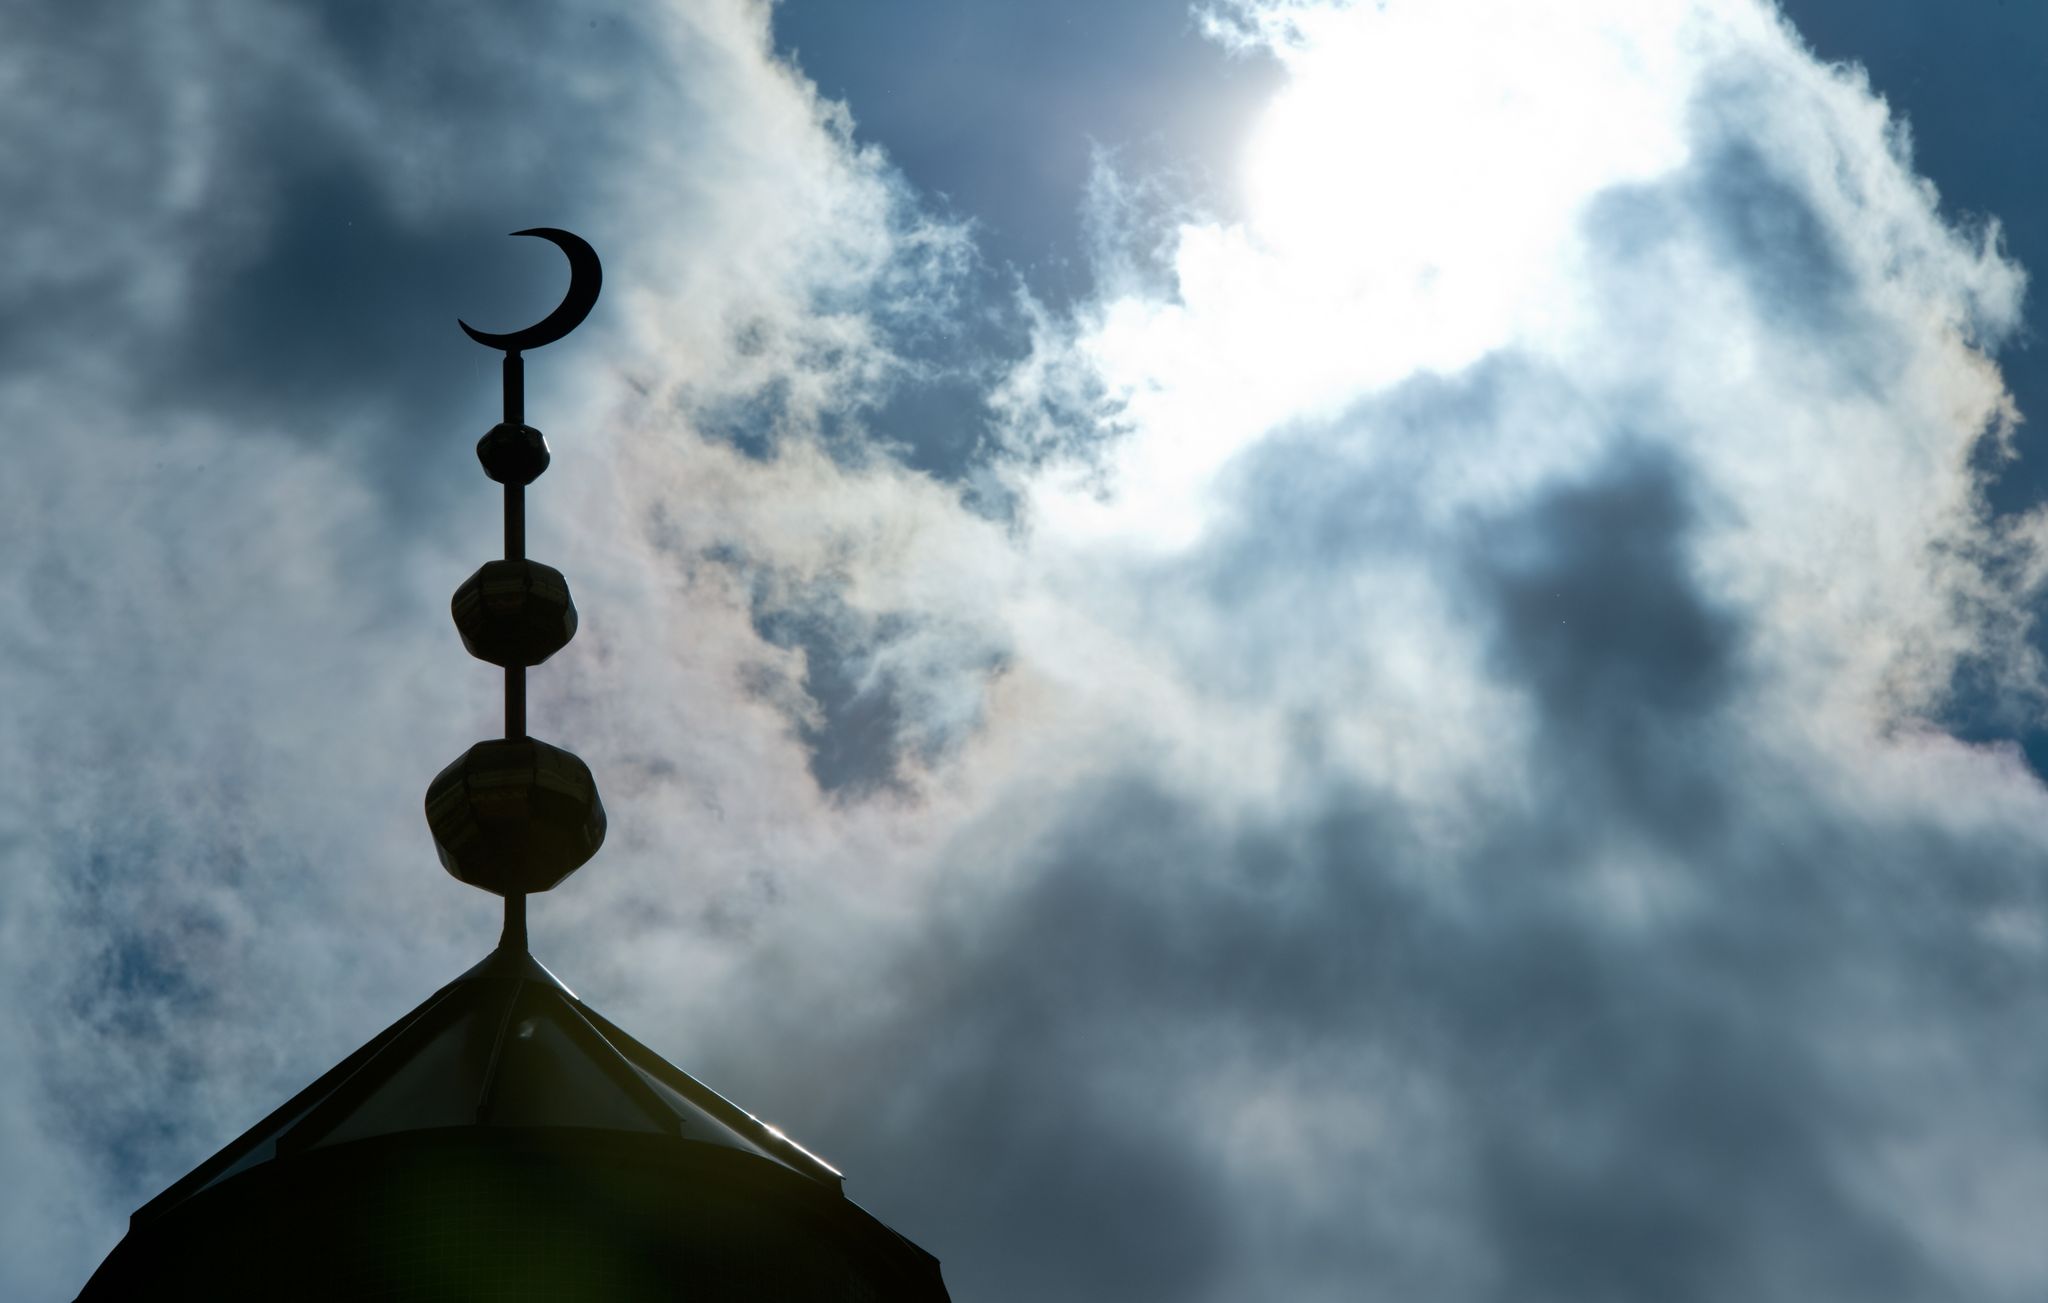 nein zu minarett: türkisch islamische gemeinde will klagen